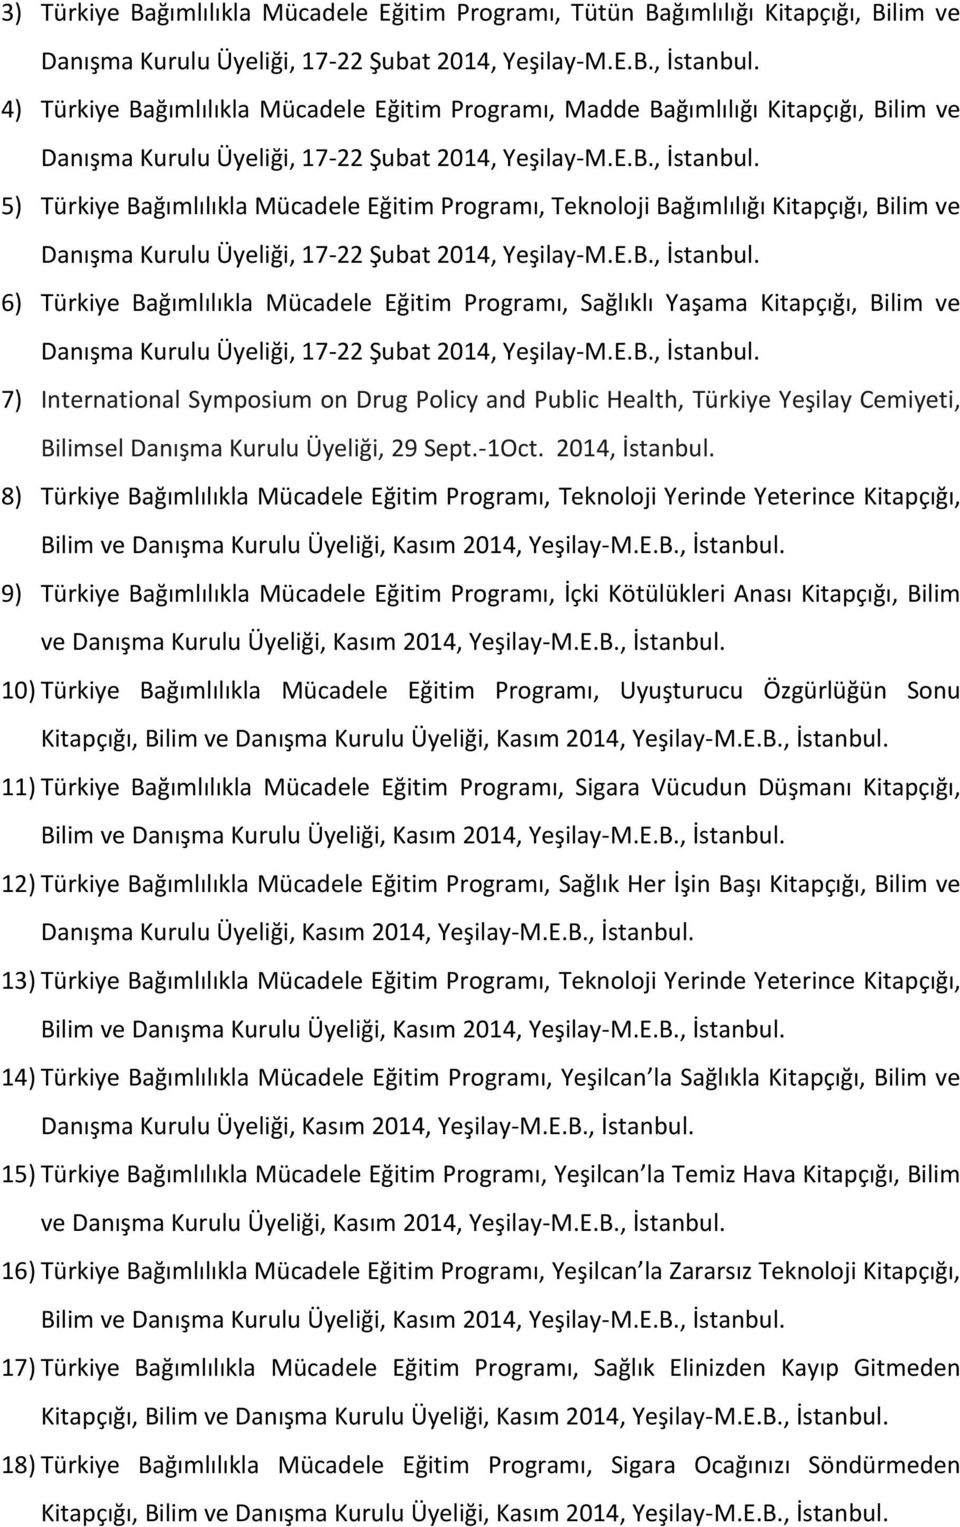 5) Türkiye Bağımlılıkla Mücadele Eğitim Programı, Teknoloji Bağımlılığı Kitapçığı, Bilim ve Danışma Kurulu Üyeliği, 17-22 Şubat 2014, Yeşilay-M.E.B., İstanbul.